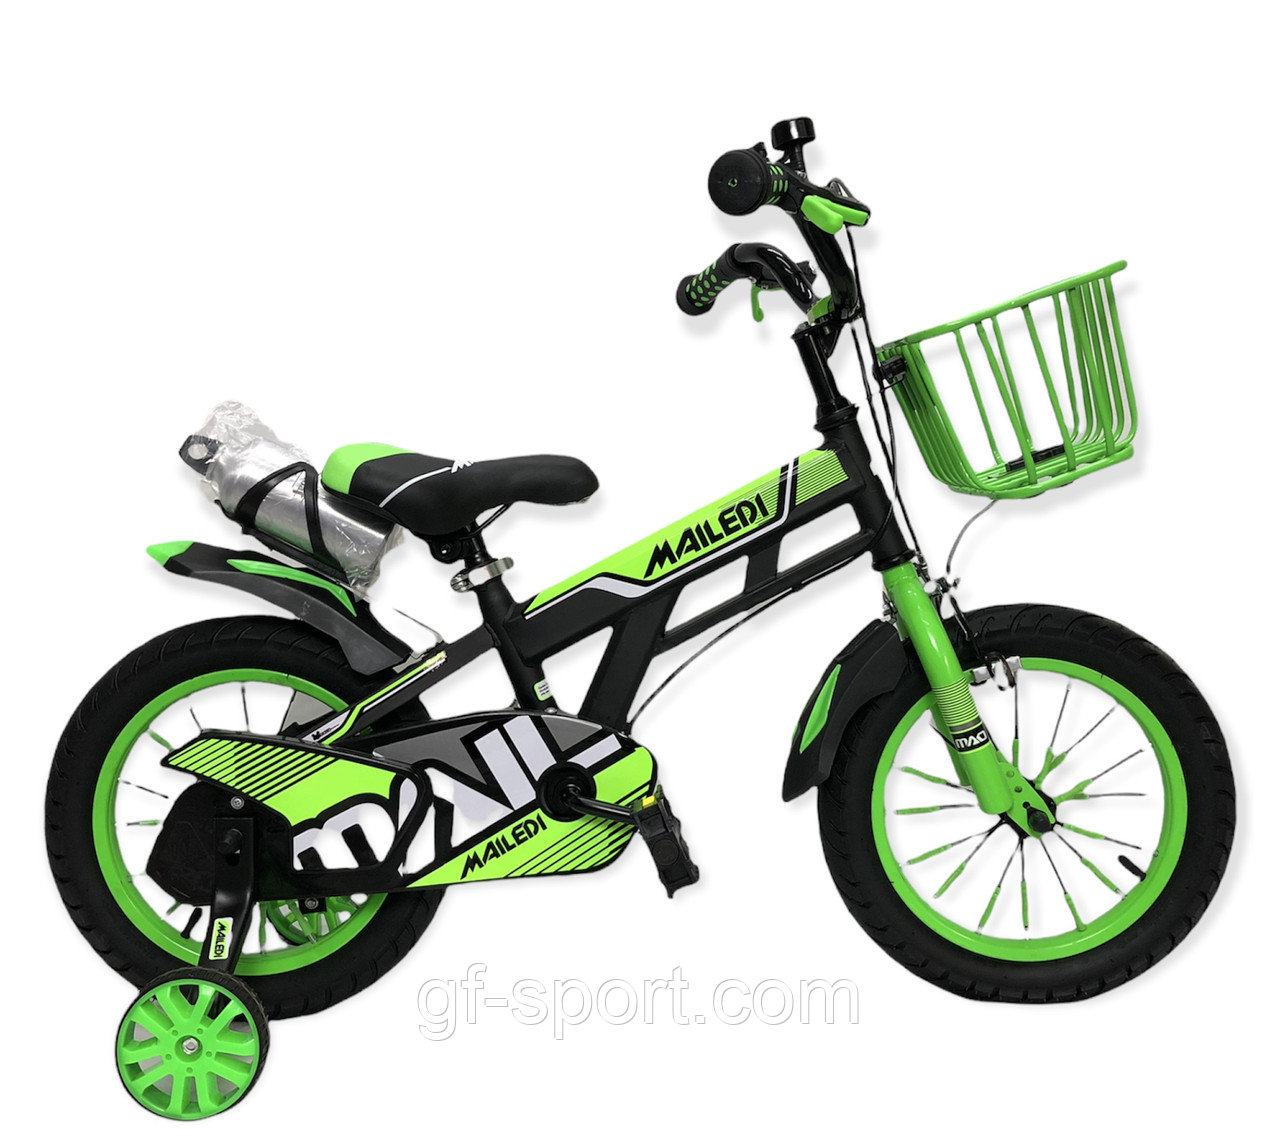 Велосипед Mailedi зеленый оригинал детский с холостым ходом 14 размер (506-14)